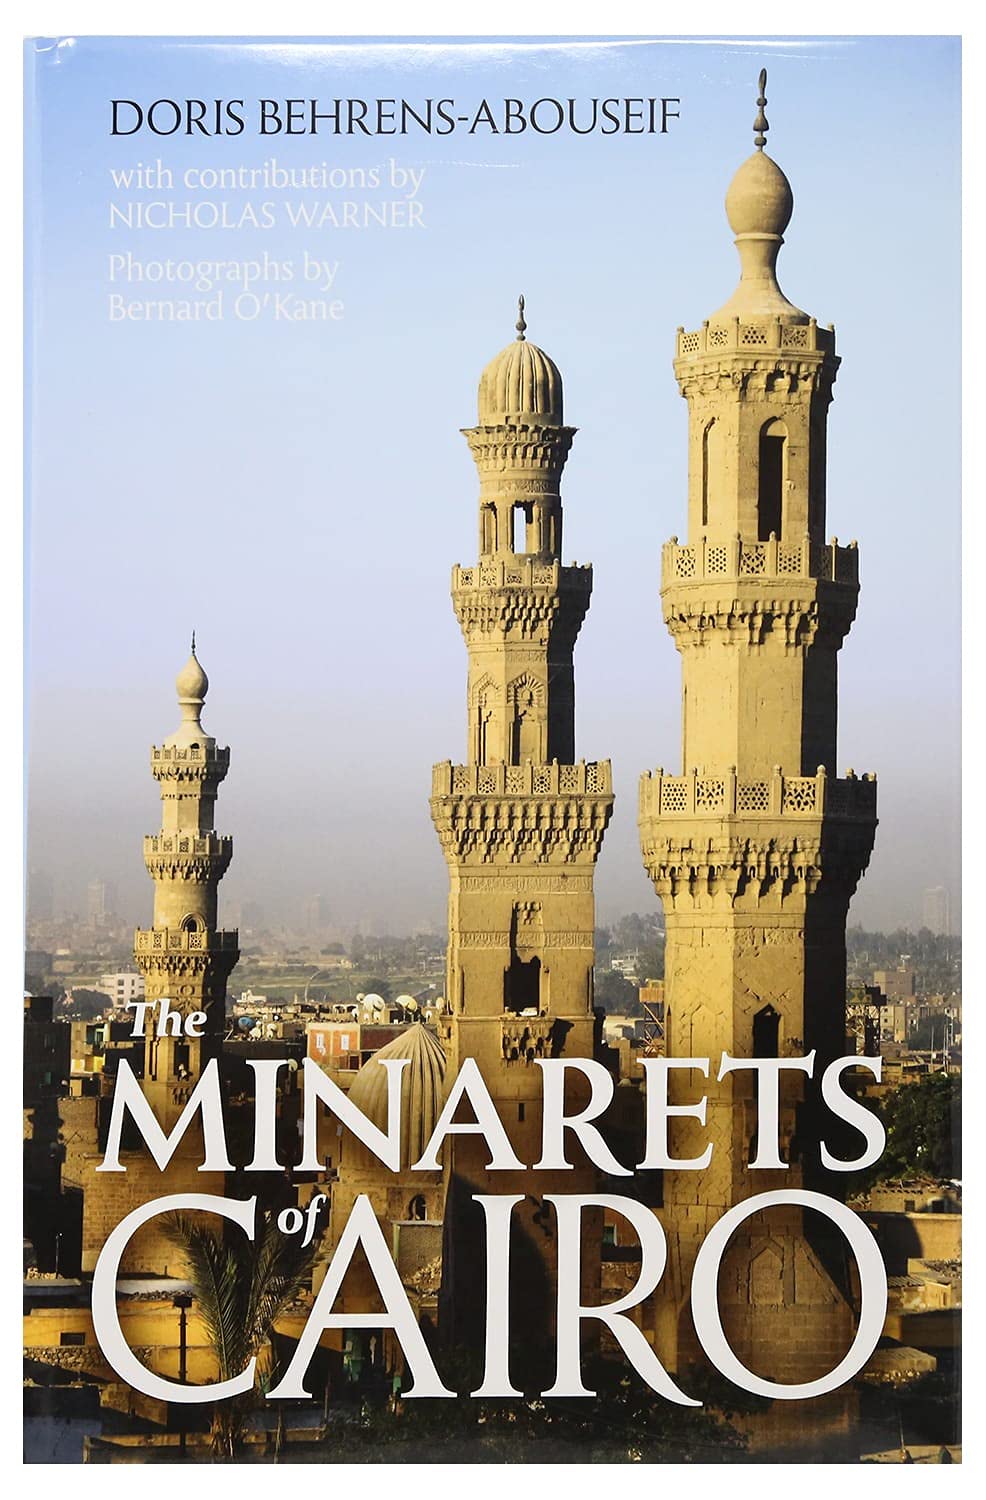 THE MINARETS OF EGYPT